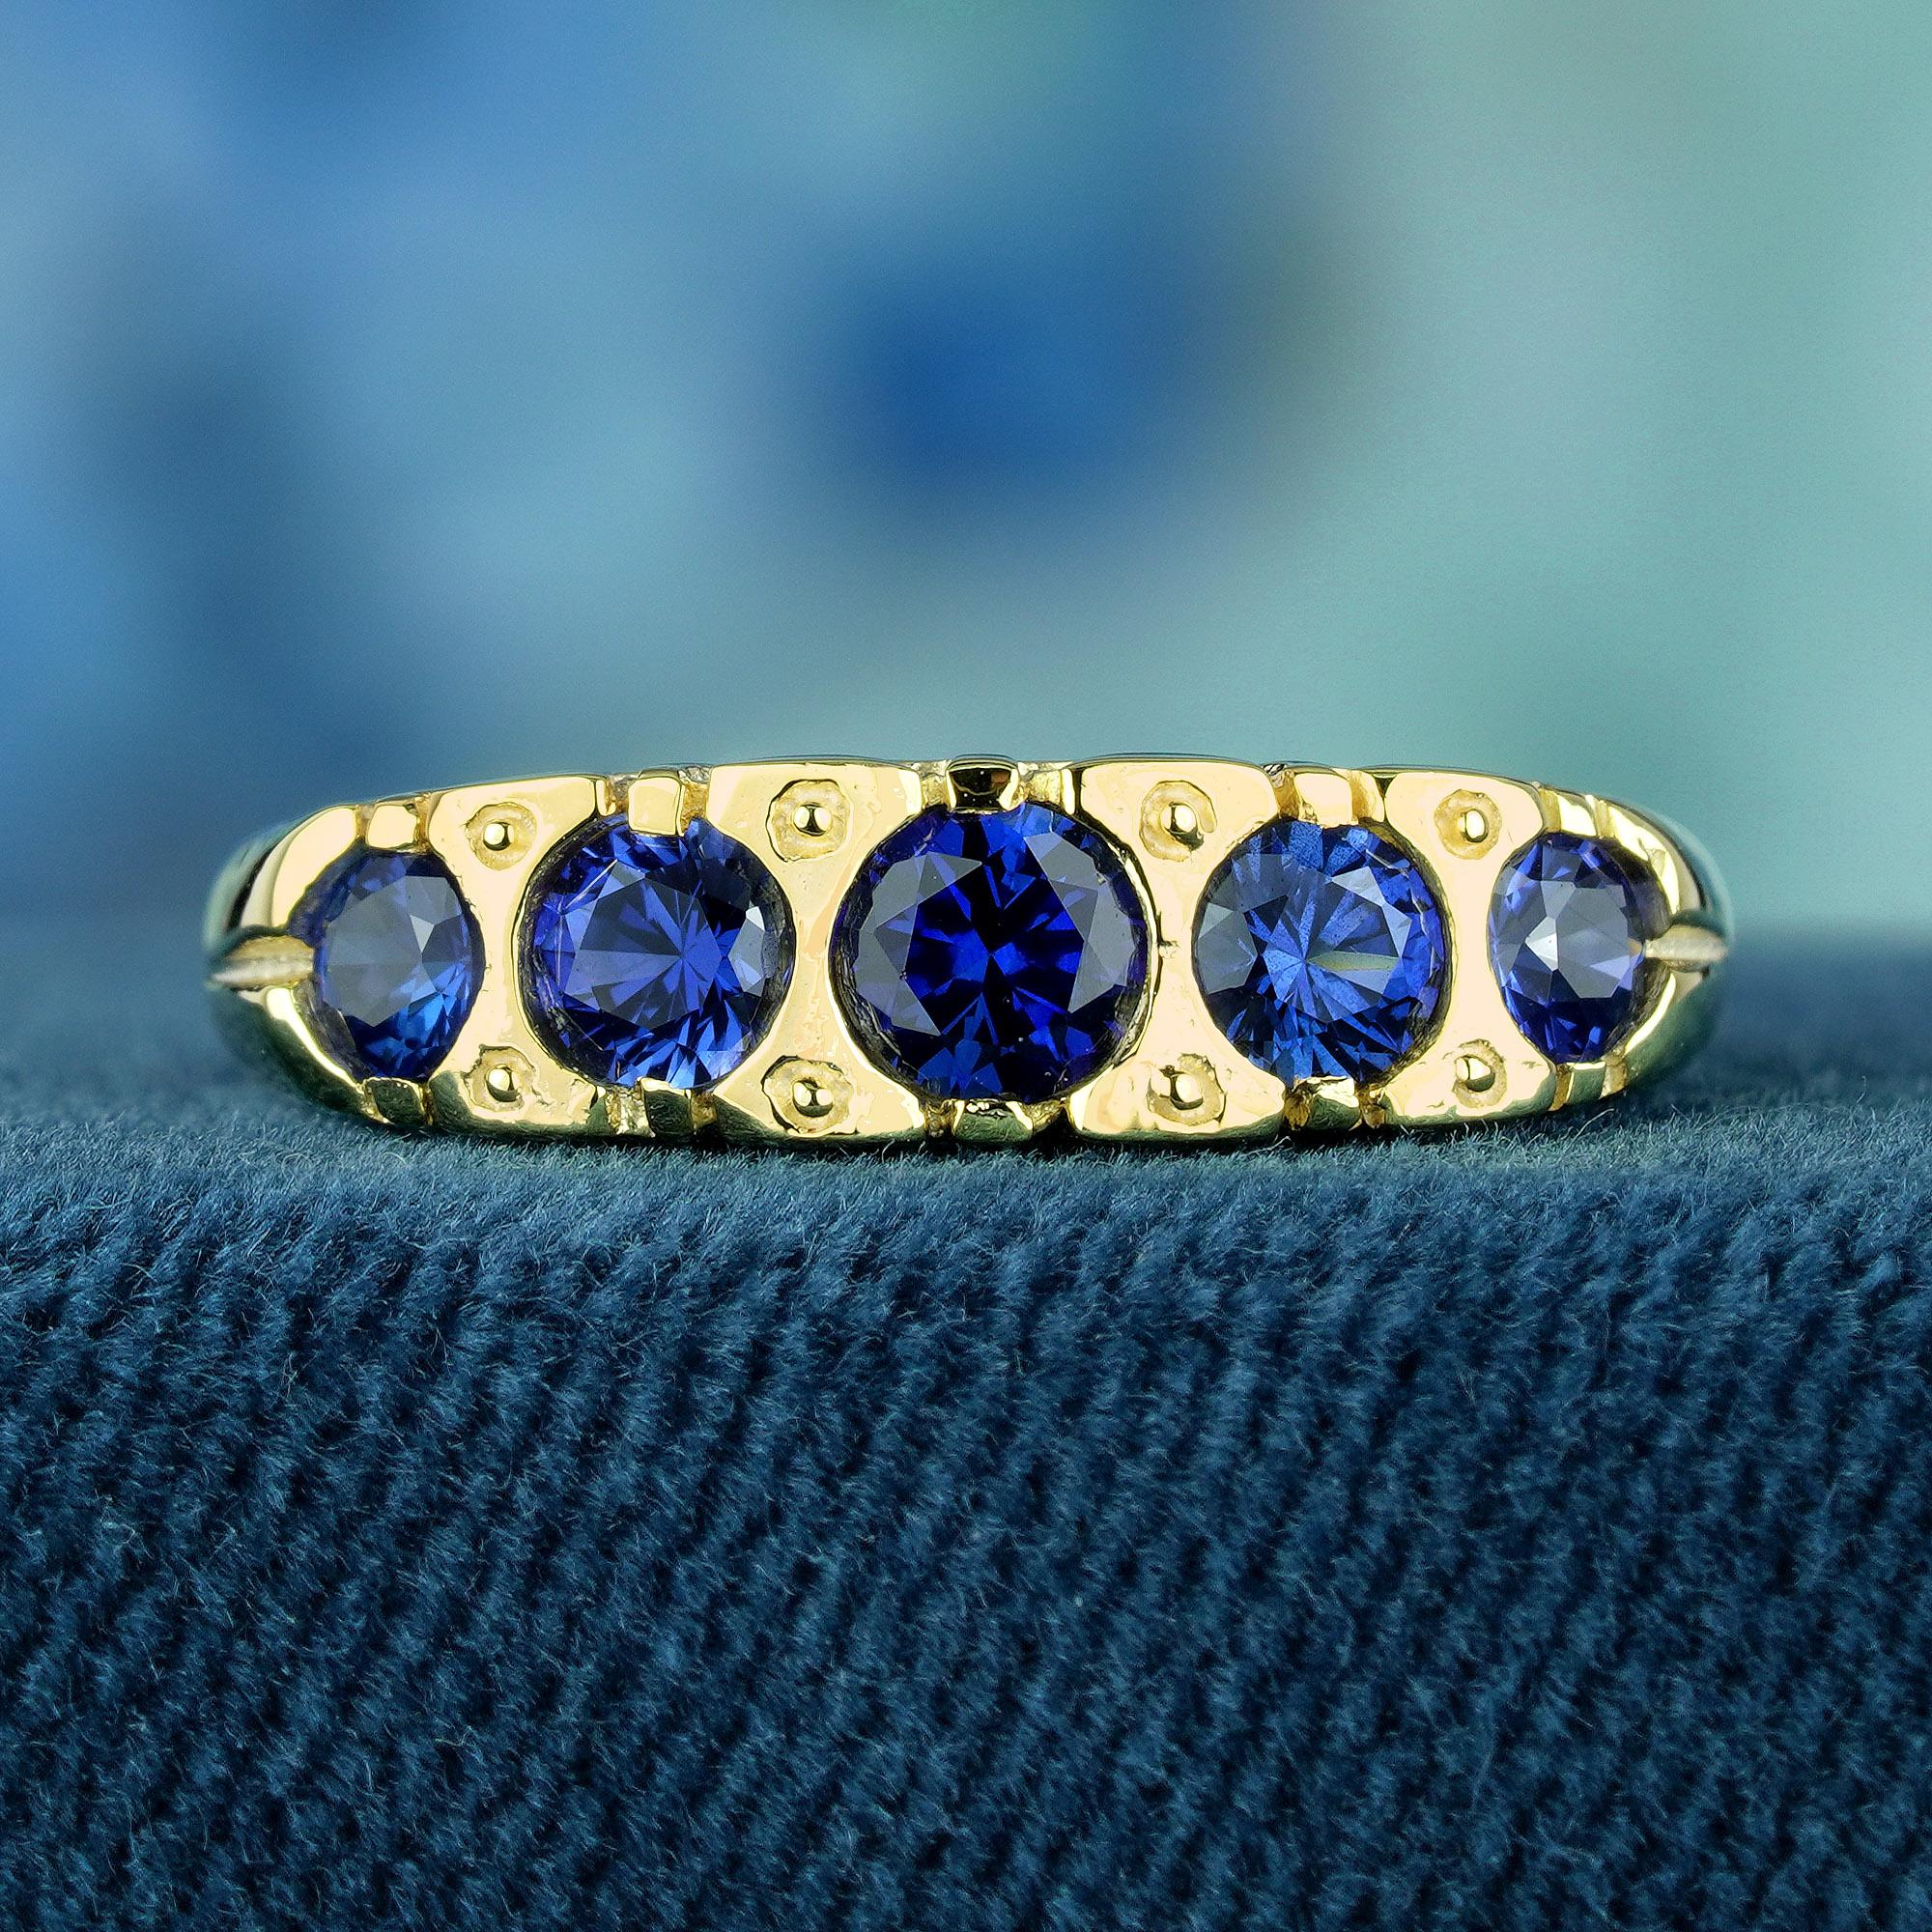 Dieser exquisite Ring im Vintage-Stil ist mit runden, natürlichen blauen Saphiren verziert, die auf einem glatten und glänzenden Gelbgoldband ruhen. Die zarte Fünf-Stein-Fassung des Rings versprüht einen Hauch von Vintage-Glamour, während das